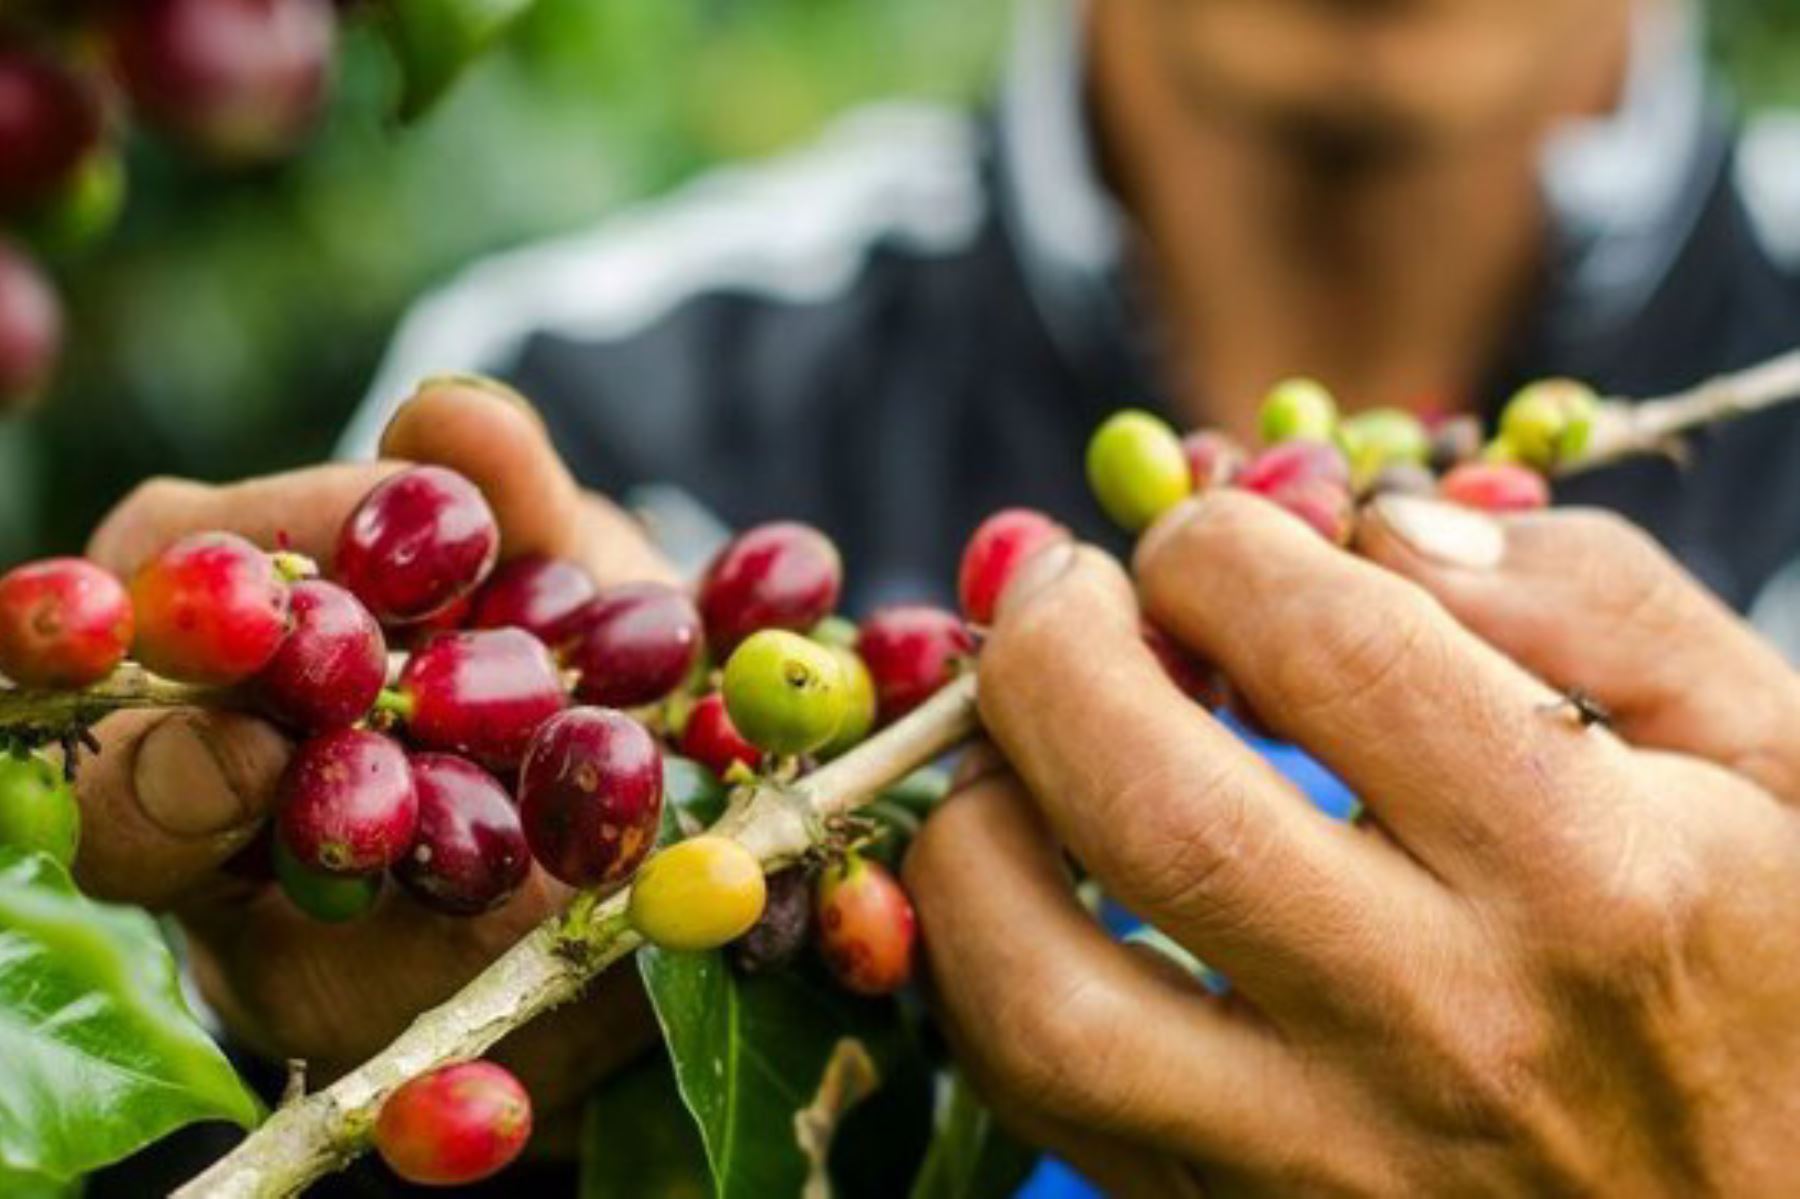 Productores de las comunidades de Chengari y Catoteni, asentadas en la zona de amortiguamiento de la Reserva Comunal El Sira (Ucayali), producen 100 quintales de café orgánico al año.